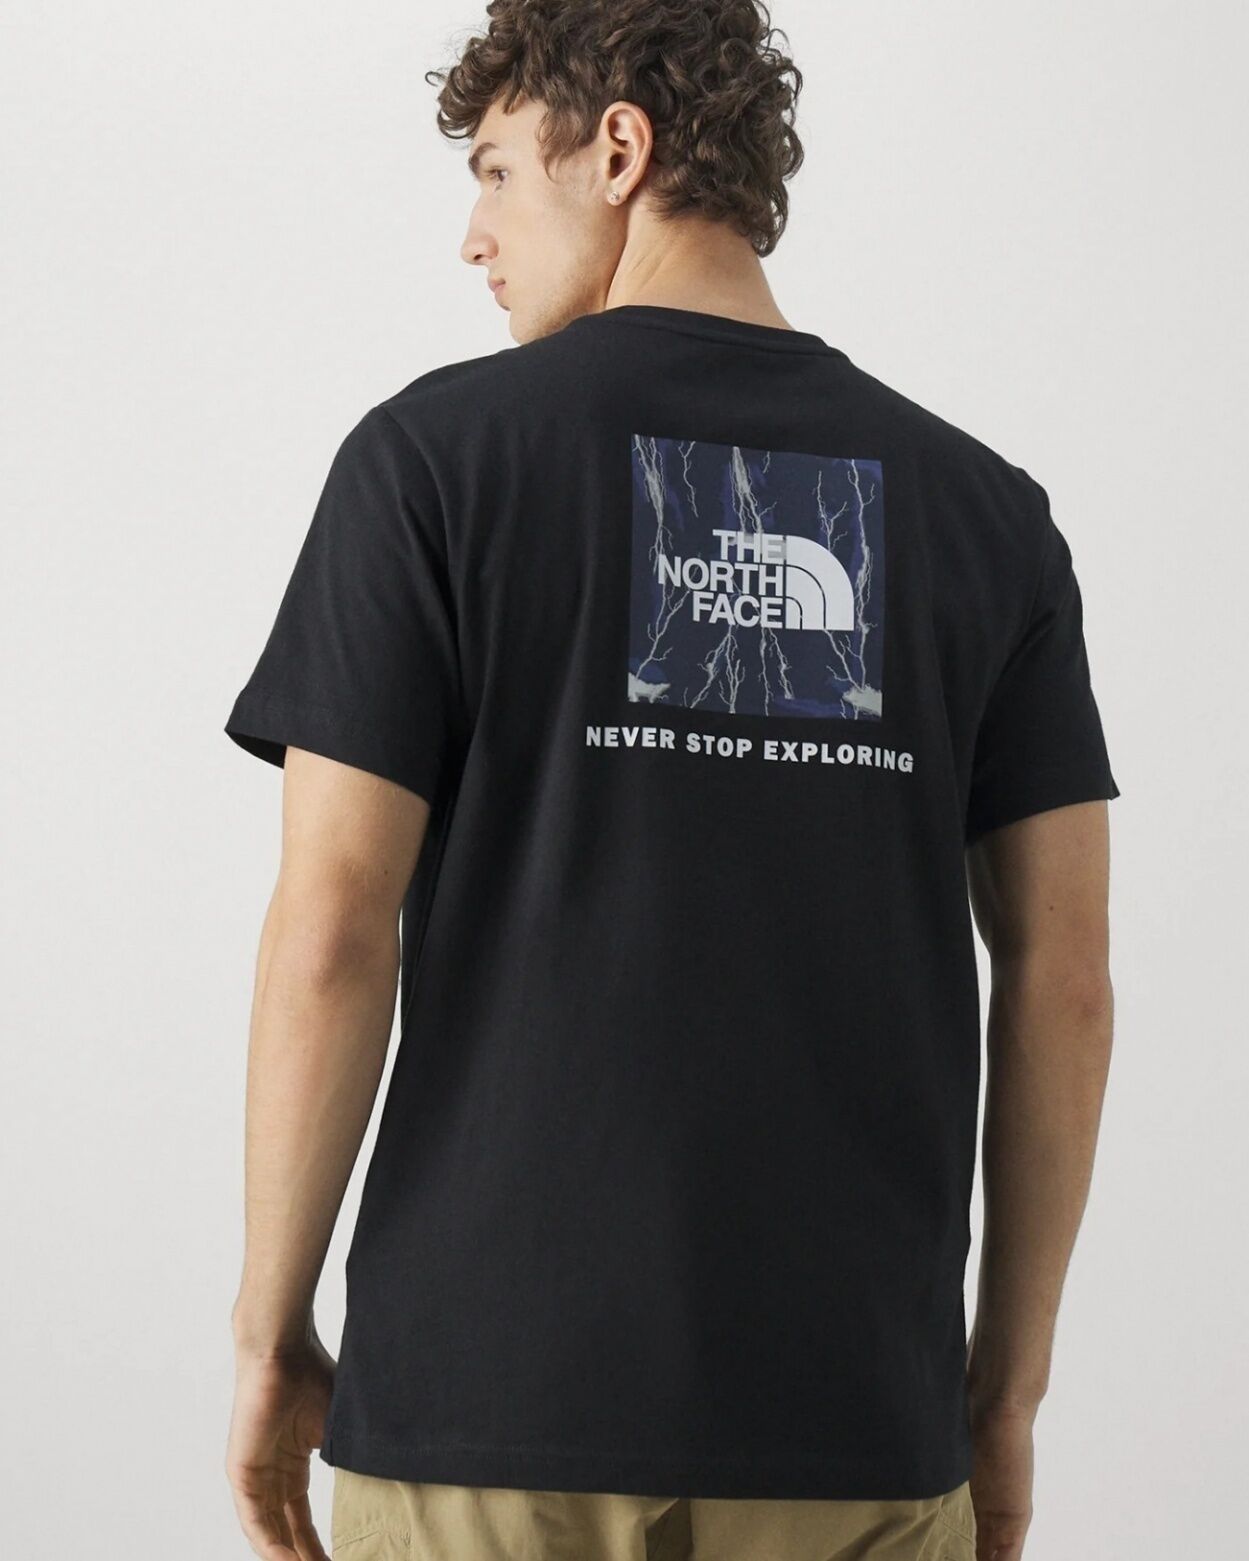 The North Face T-Shirt Maglia maglietta UOMO Nero Blue REDBOX Tee Cotone